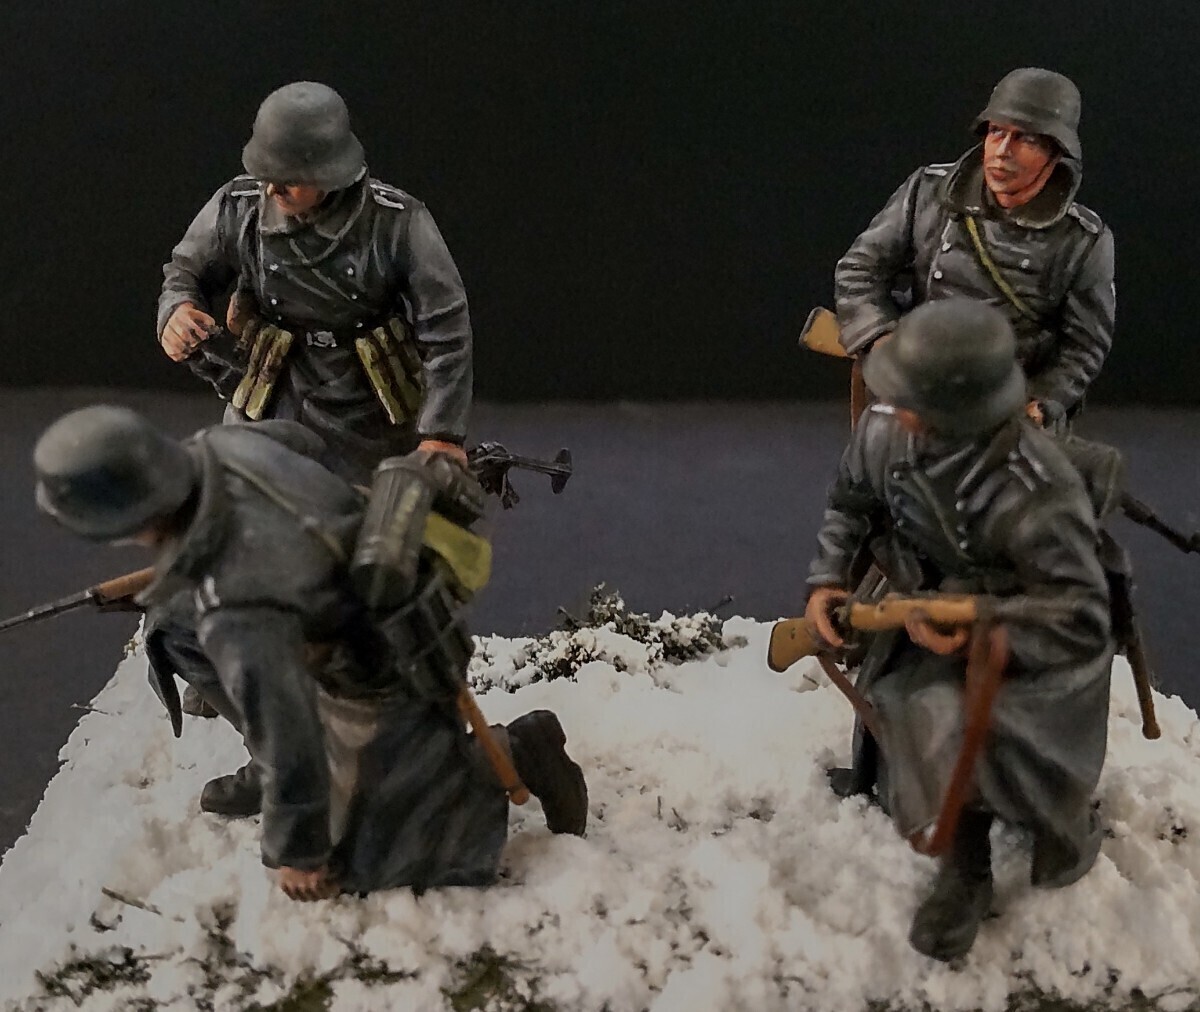 1/35ドラゴン ドイツ冬季装備歩兵 1941モスクワ フィギュア完成品_画像2